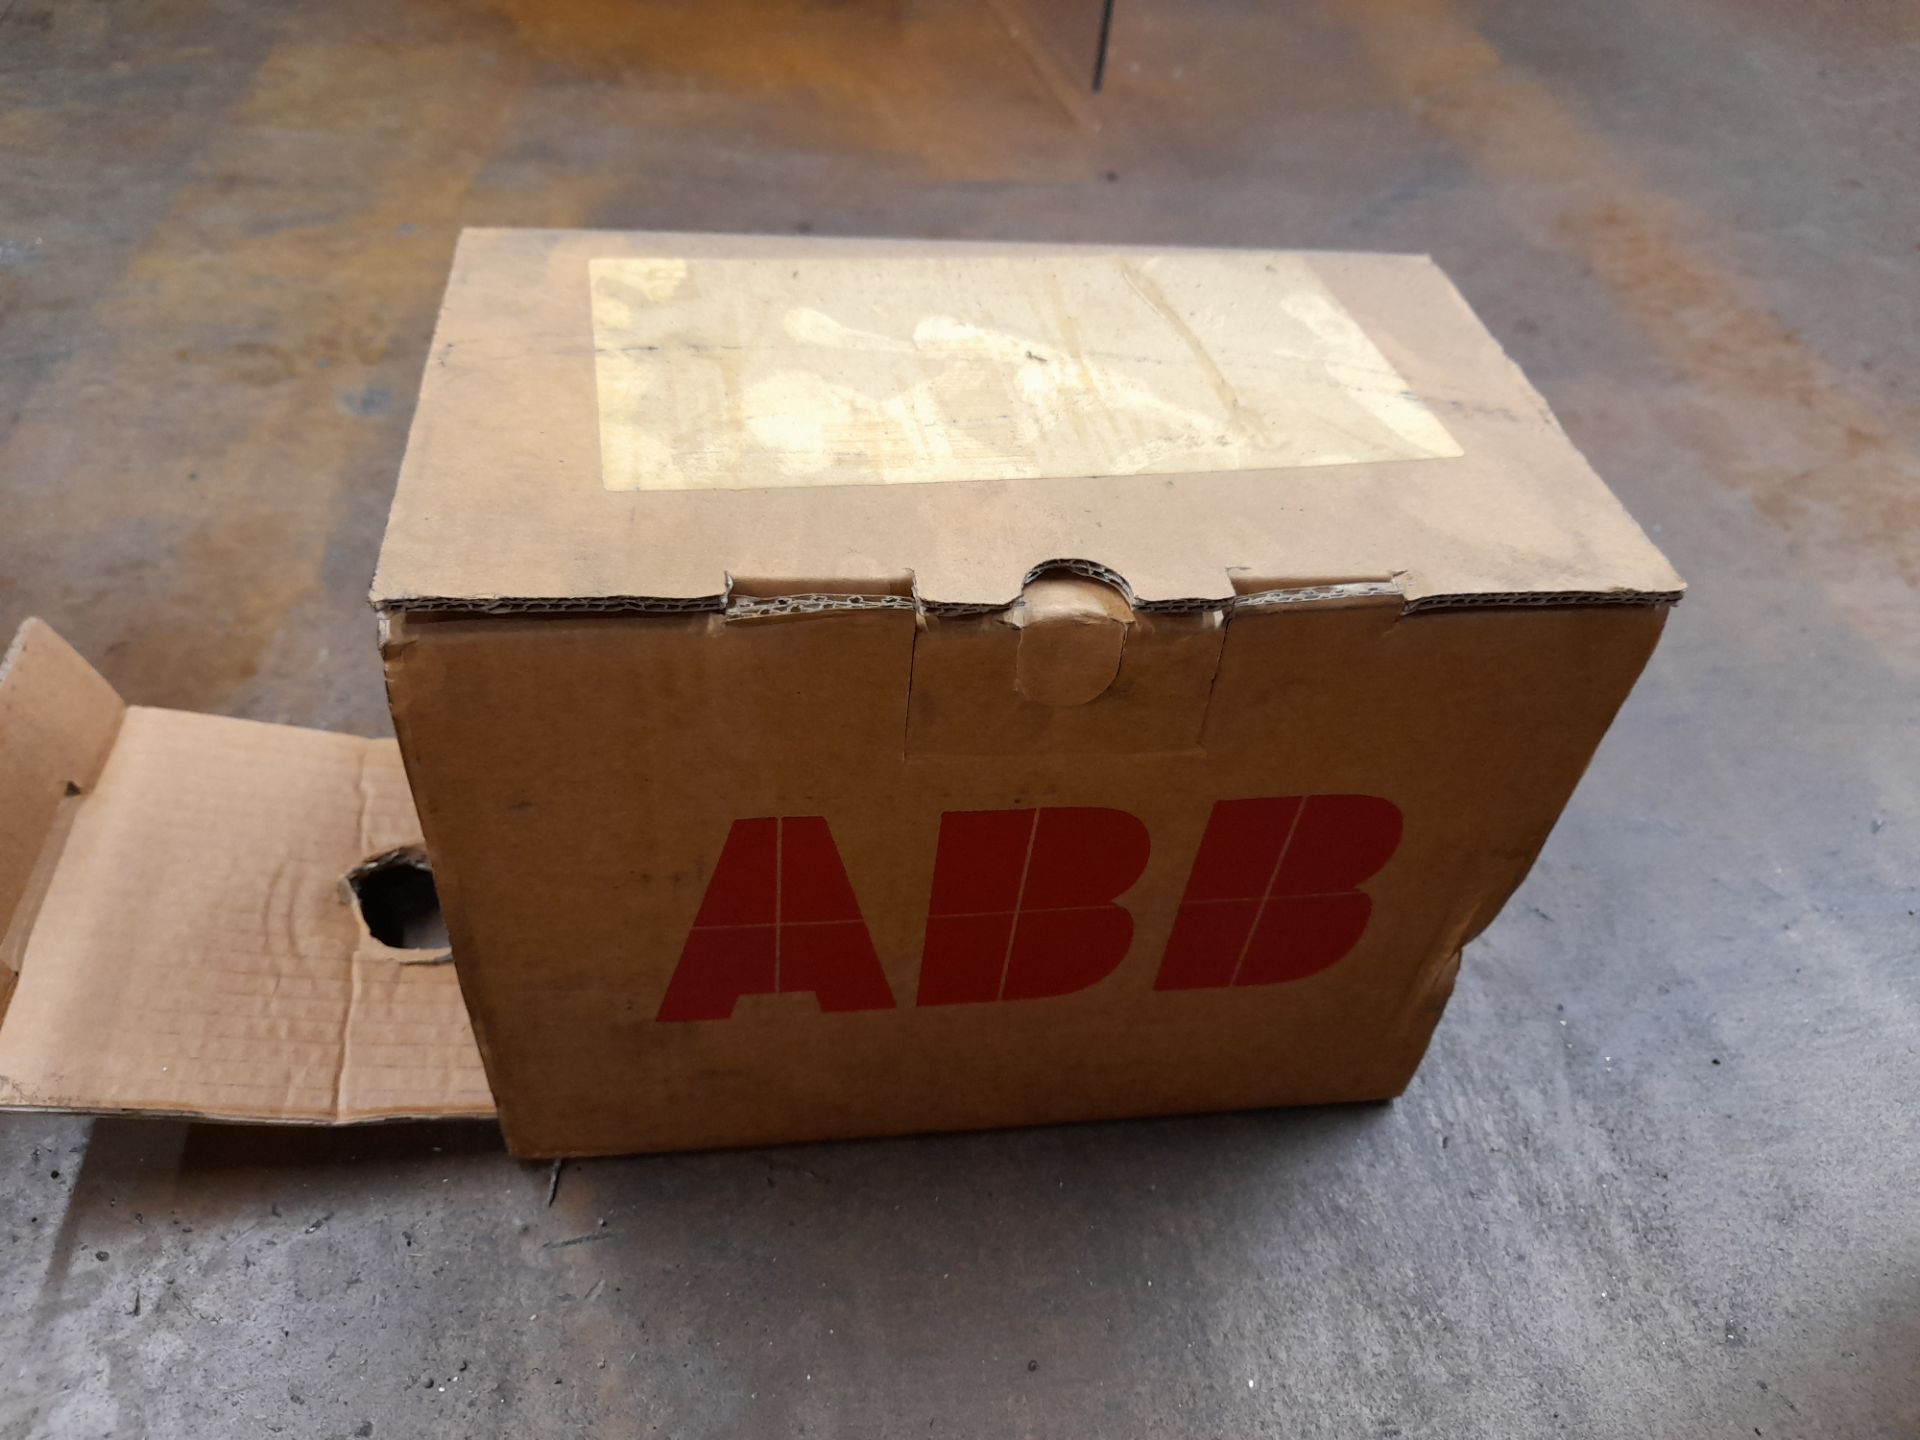 2 x ABB M2AA 080C2 electric motors, with 1 x ABB M3AA 080C2 electric motor (Boxed / unused) - Image 6 of 7